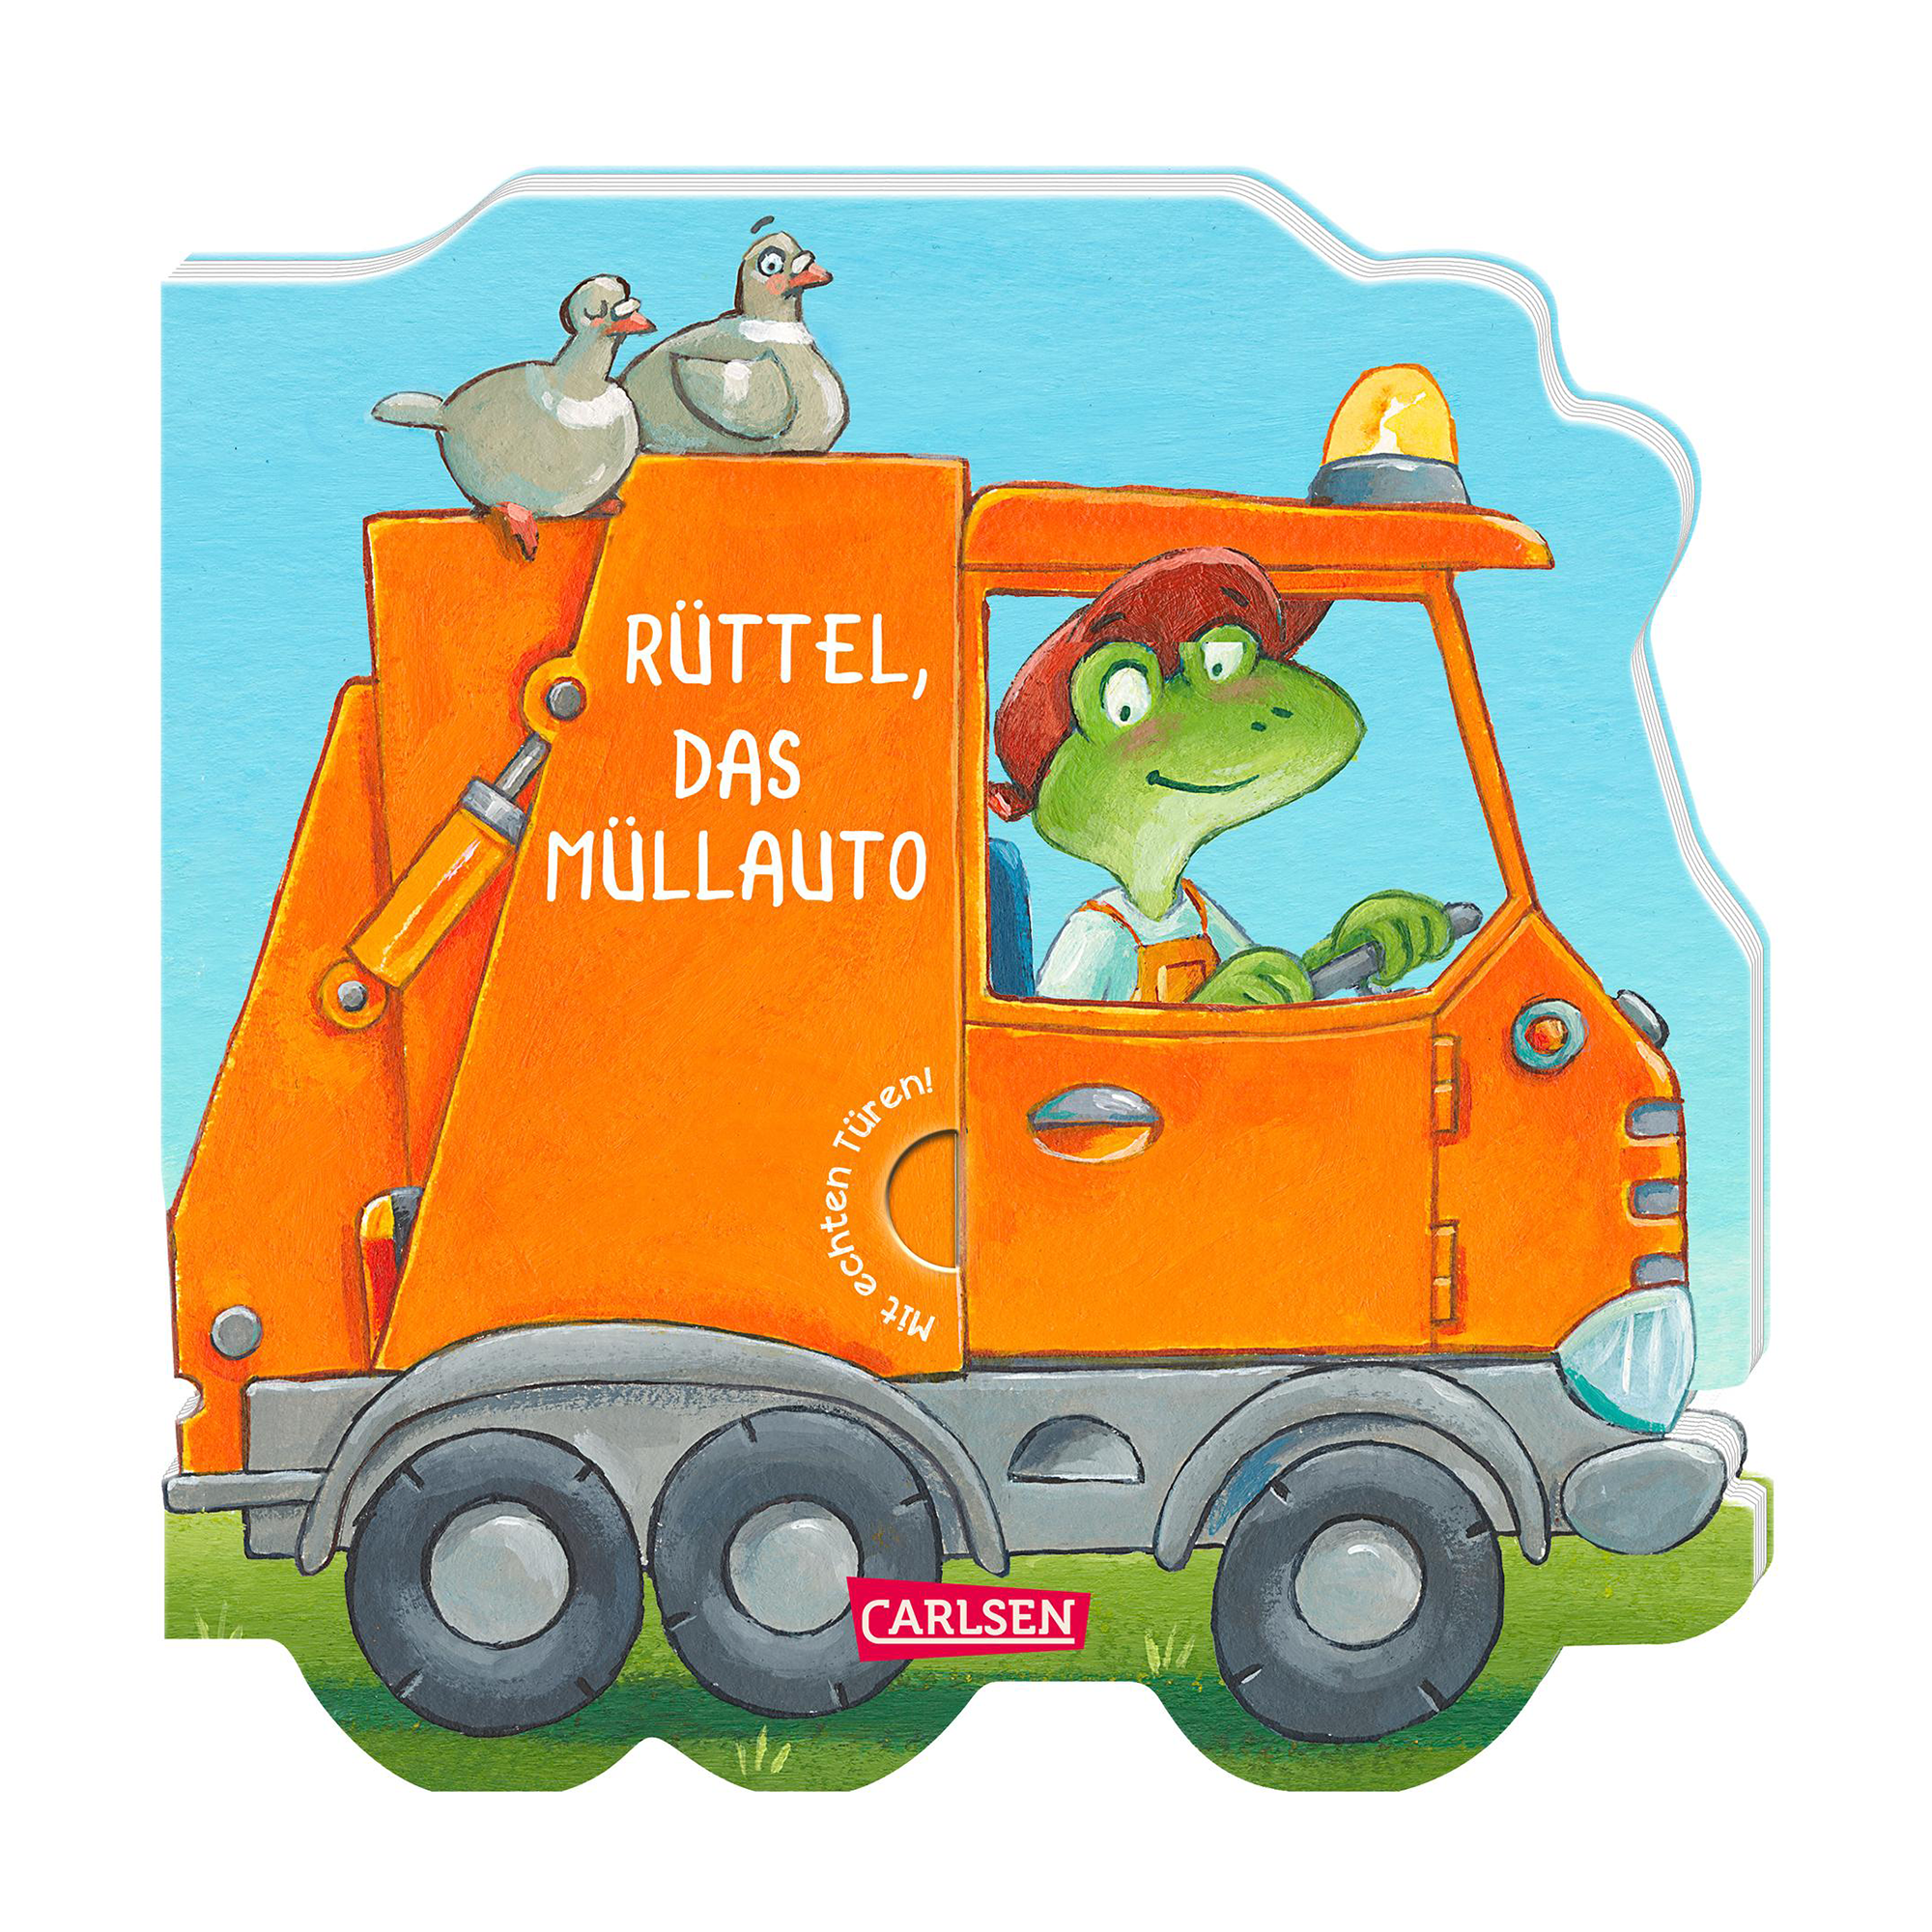 Mein kleiner Fahrzeugspaß: Rüttel, das Müllauto CARLSEN 2000583478201 1